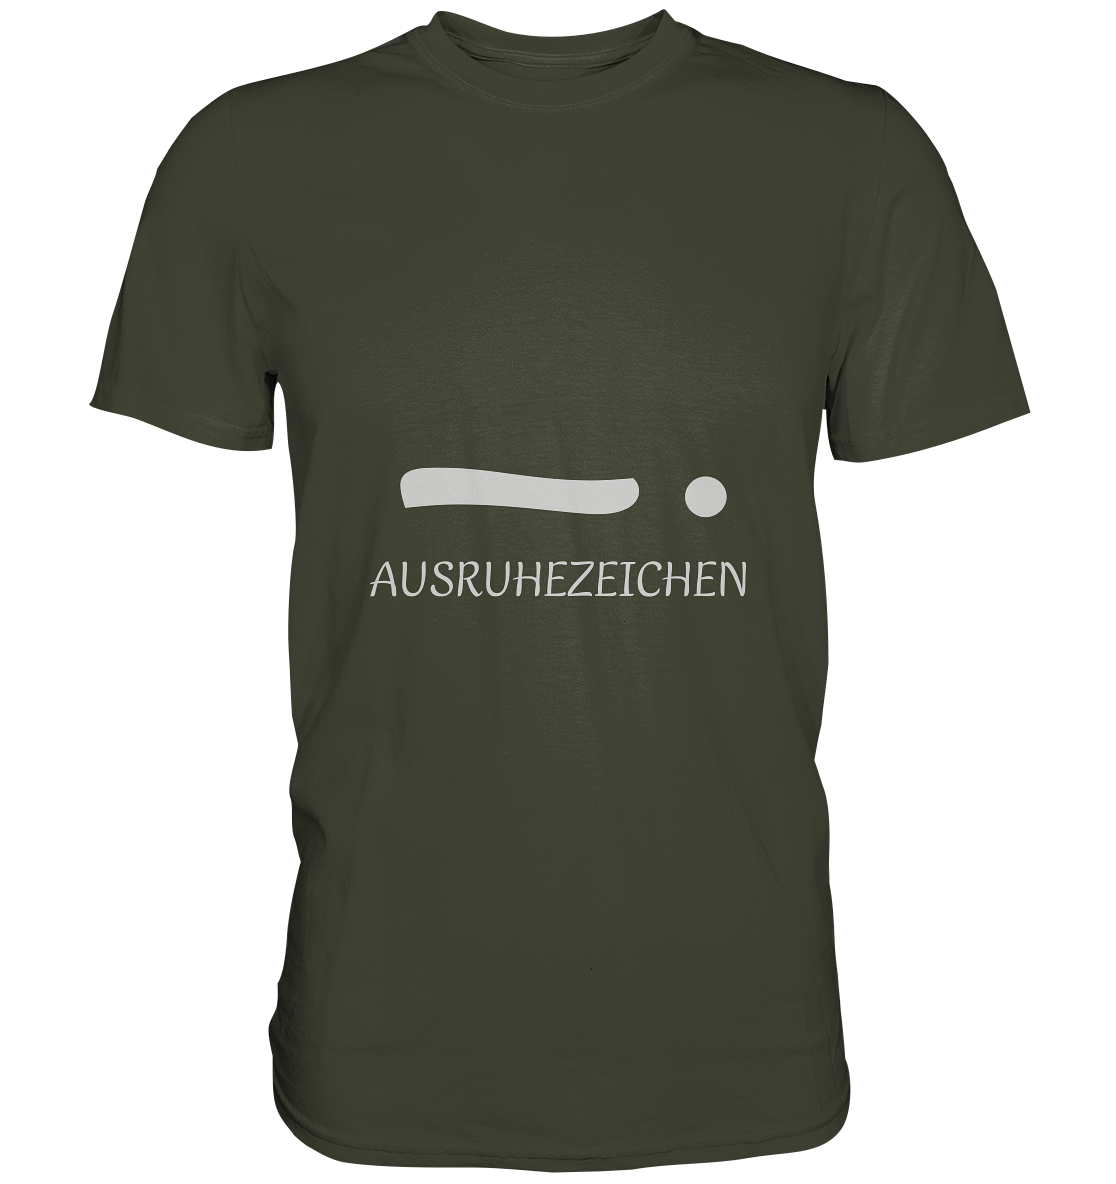 Herren T-Shirt "Ausruhezeichen", Schriftzug und liegendes Ausrufungszeichen, khaki, oliv